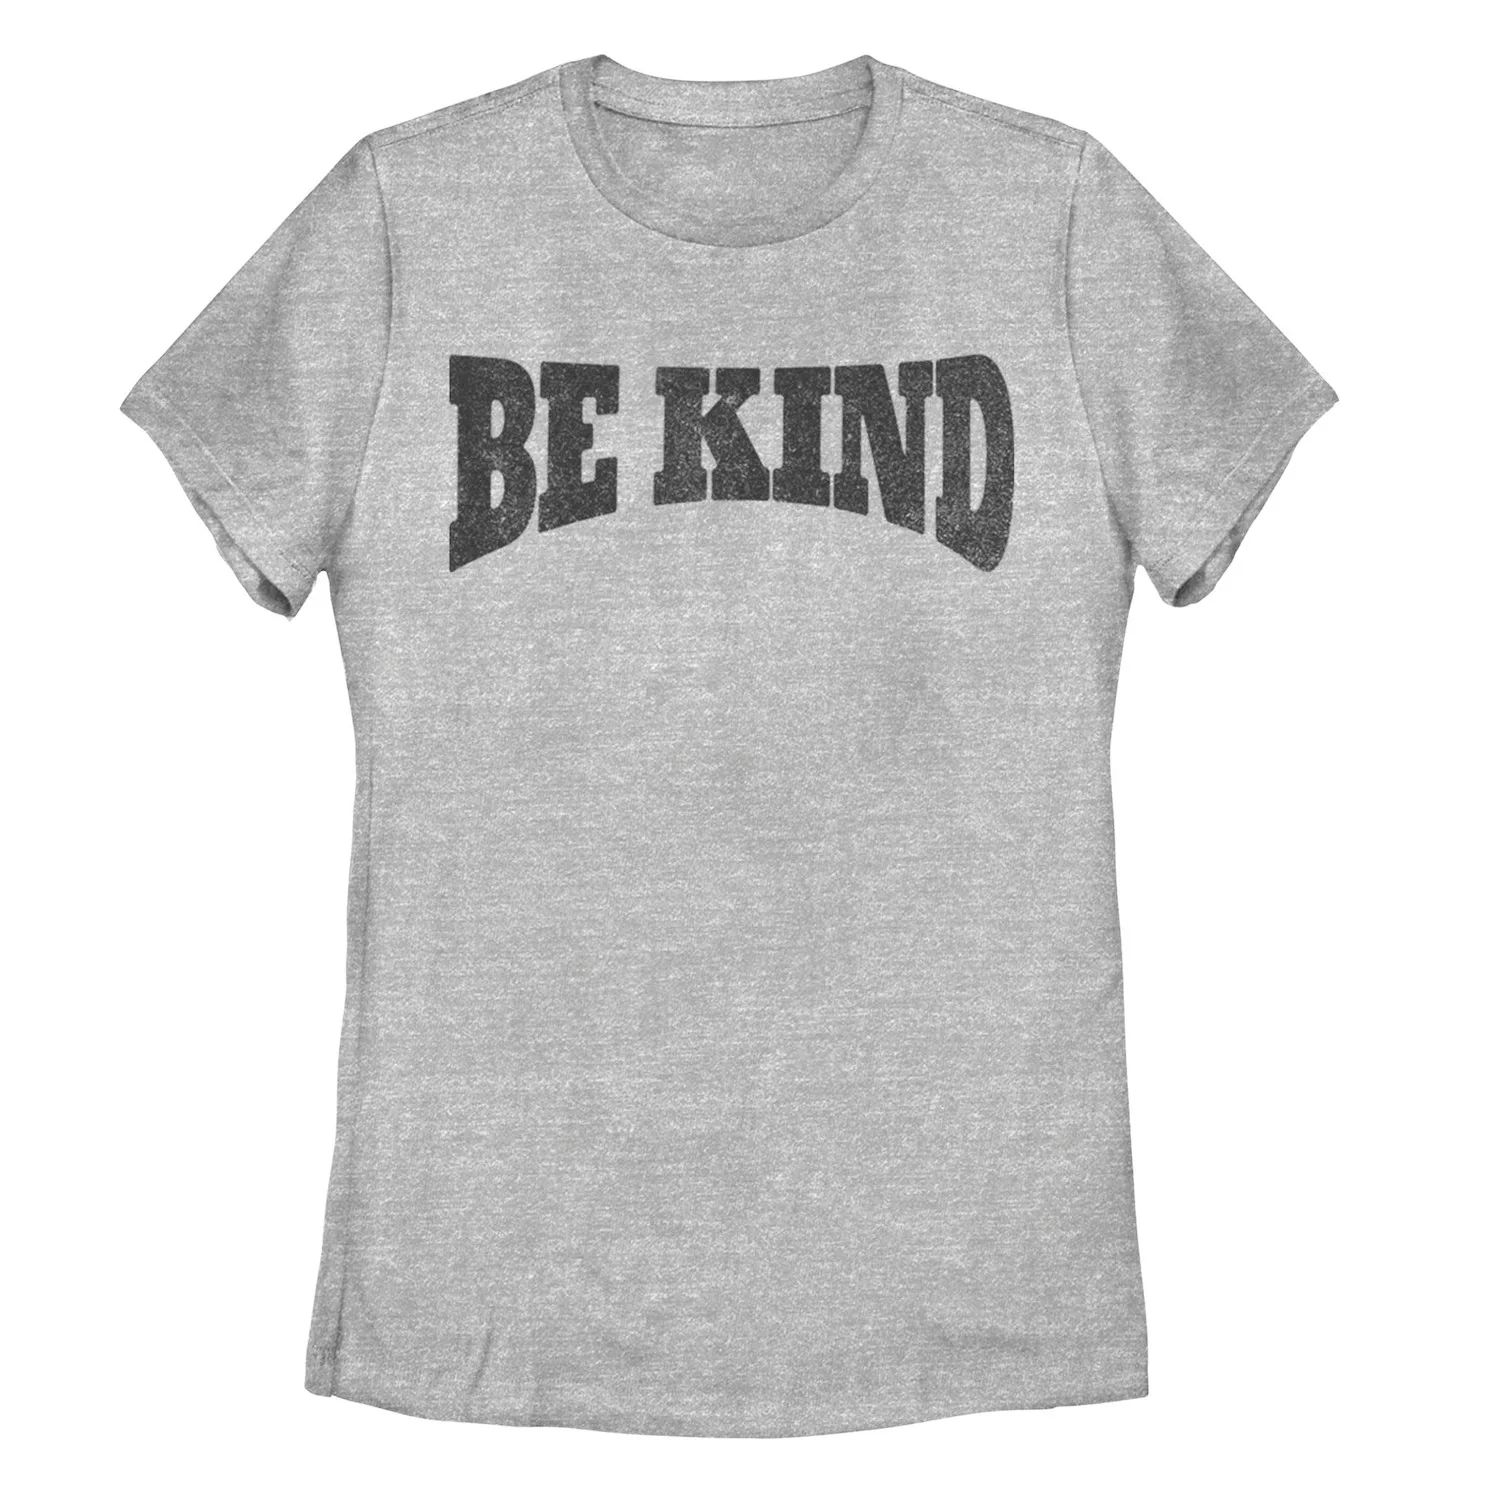 Детская футболка с арочным рисунком «Be Kind» детская футболка be kind 116 белый